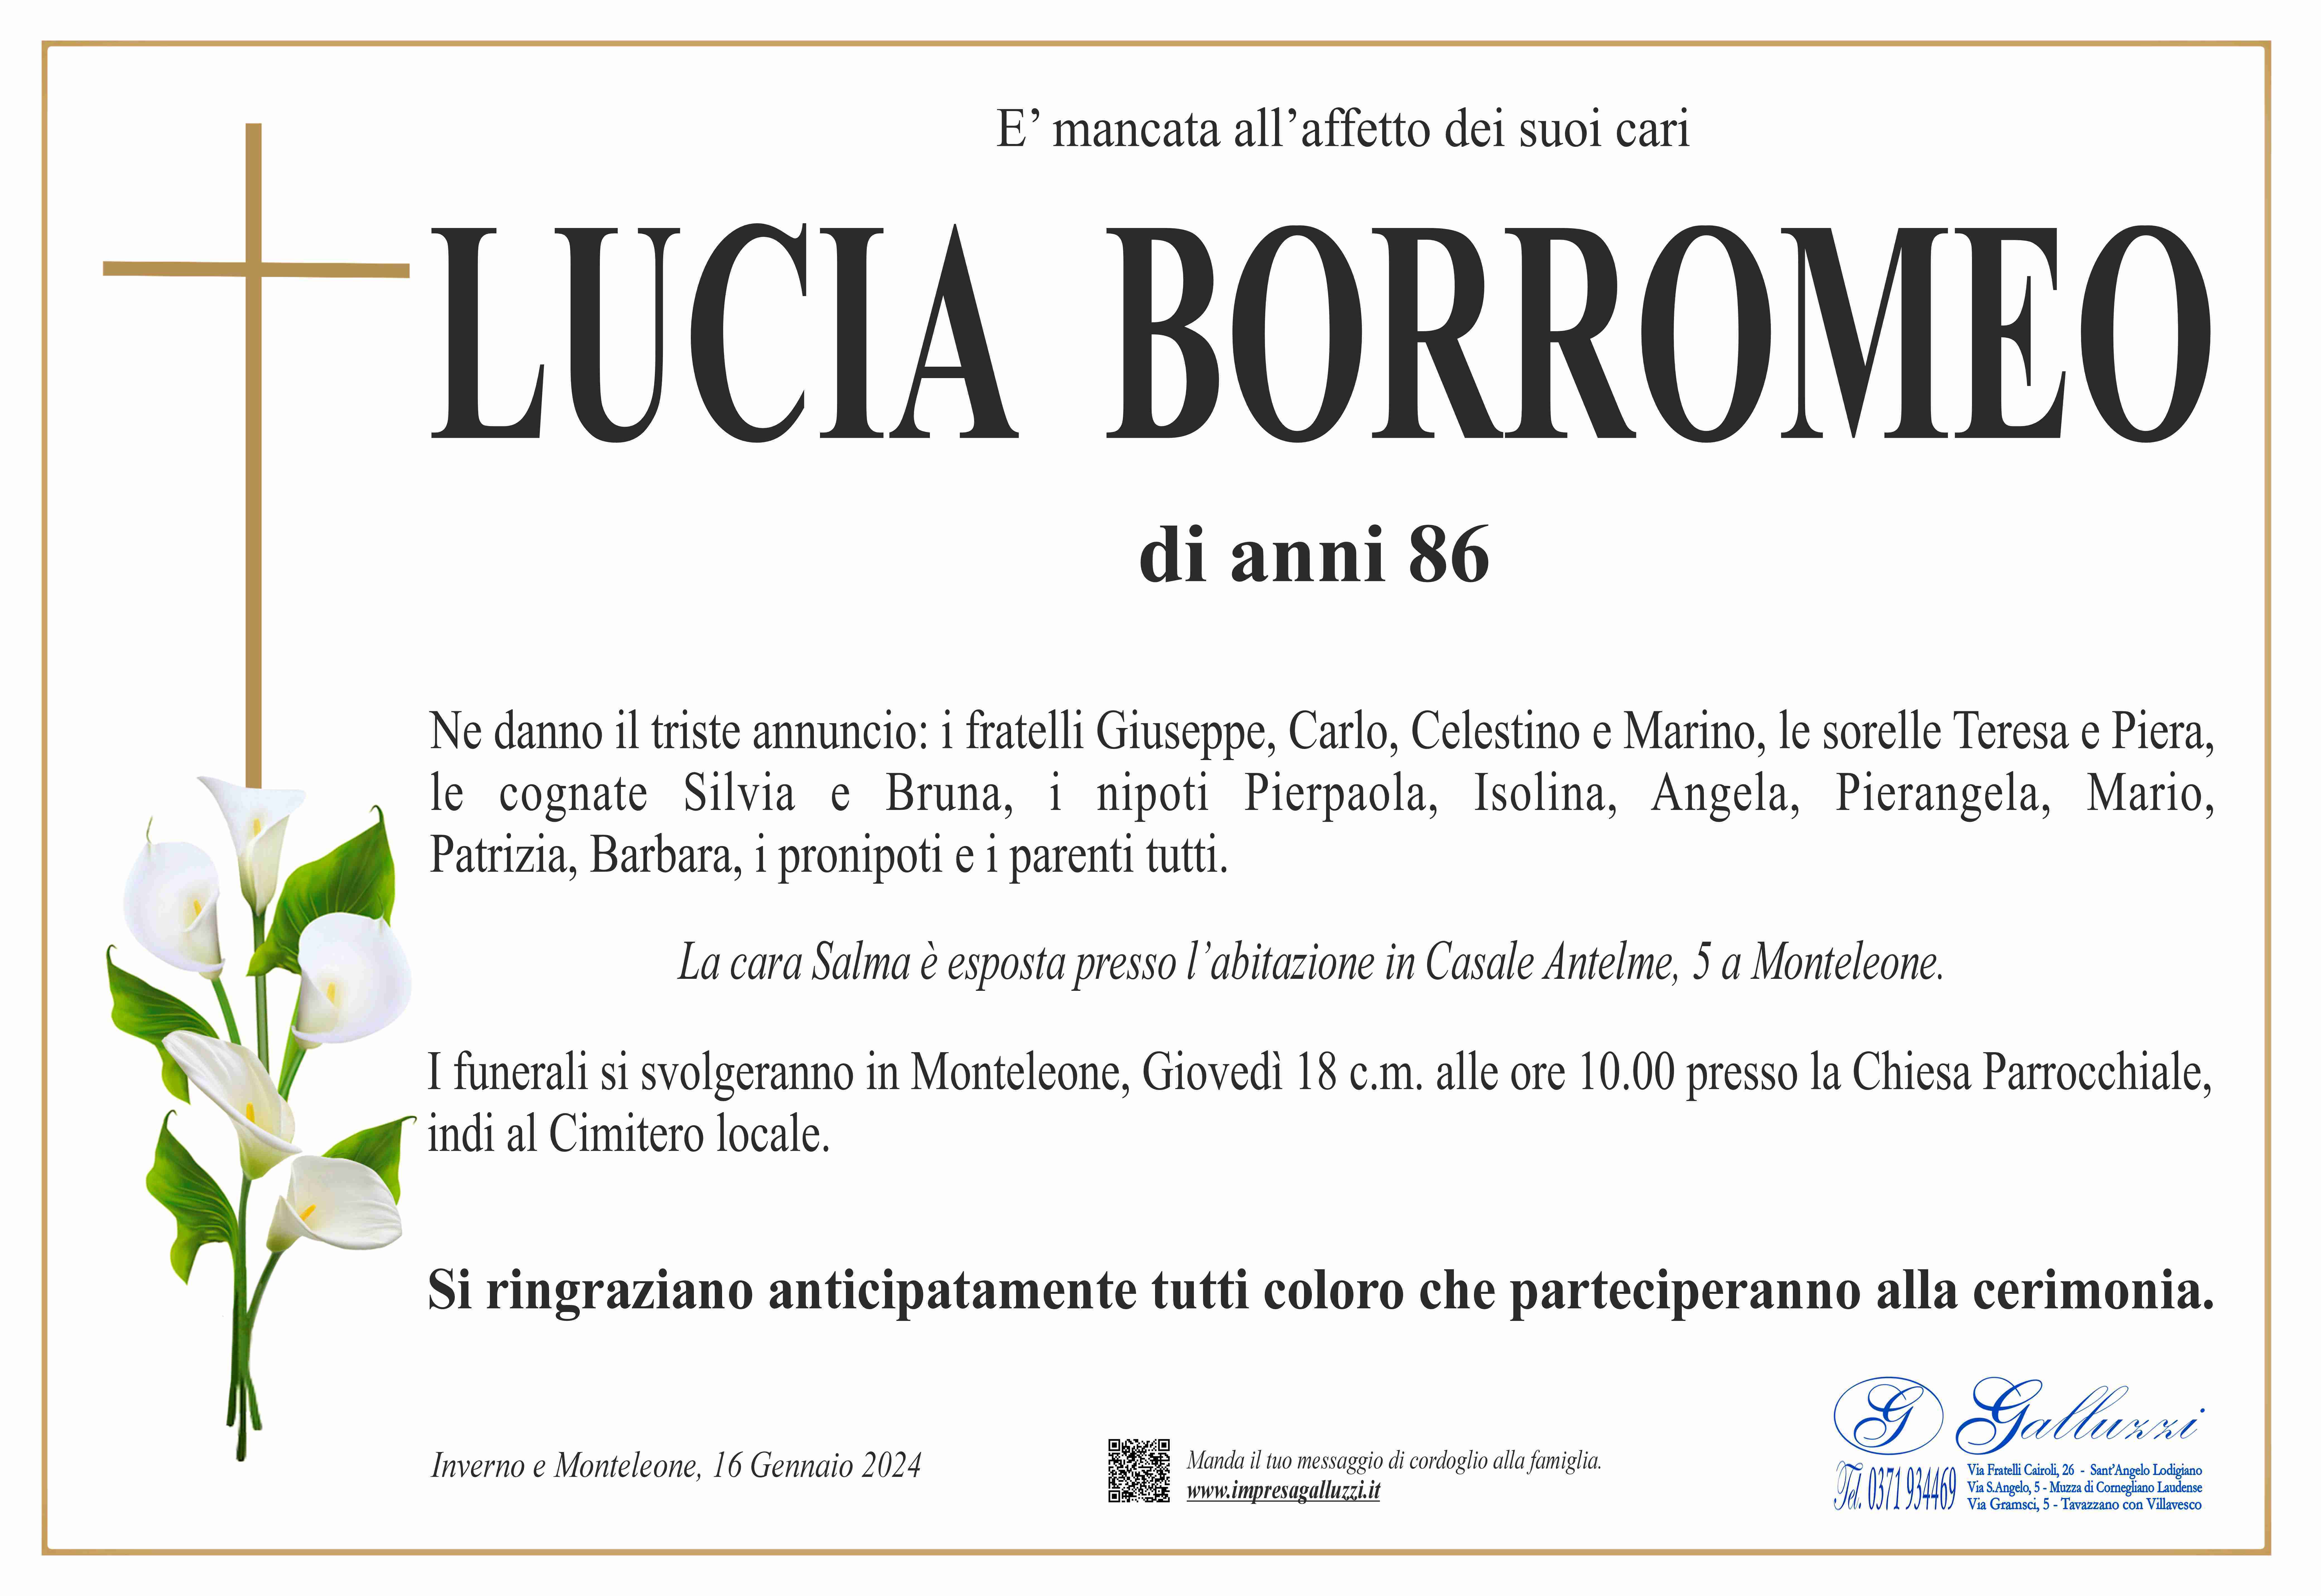 Lucia Borromeo